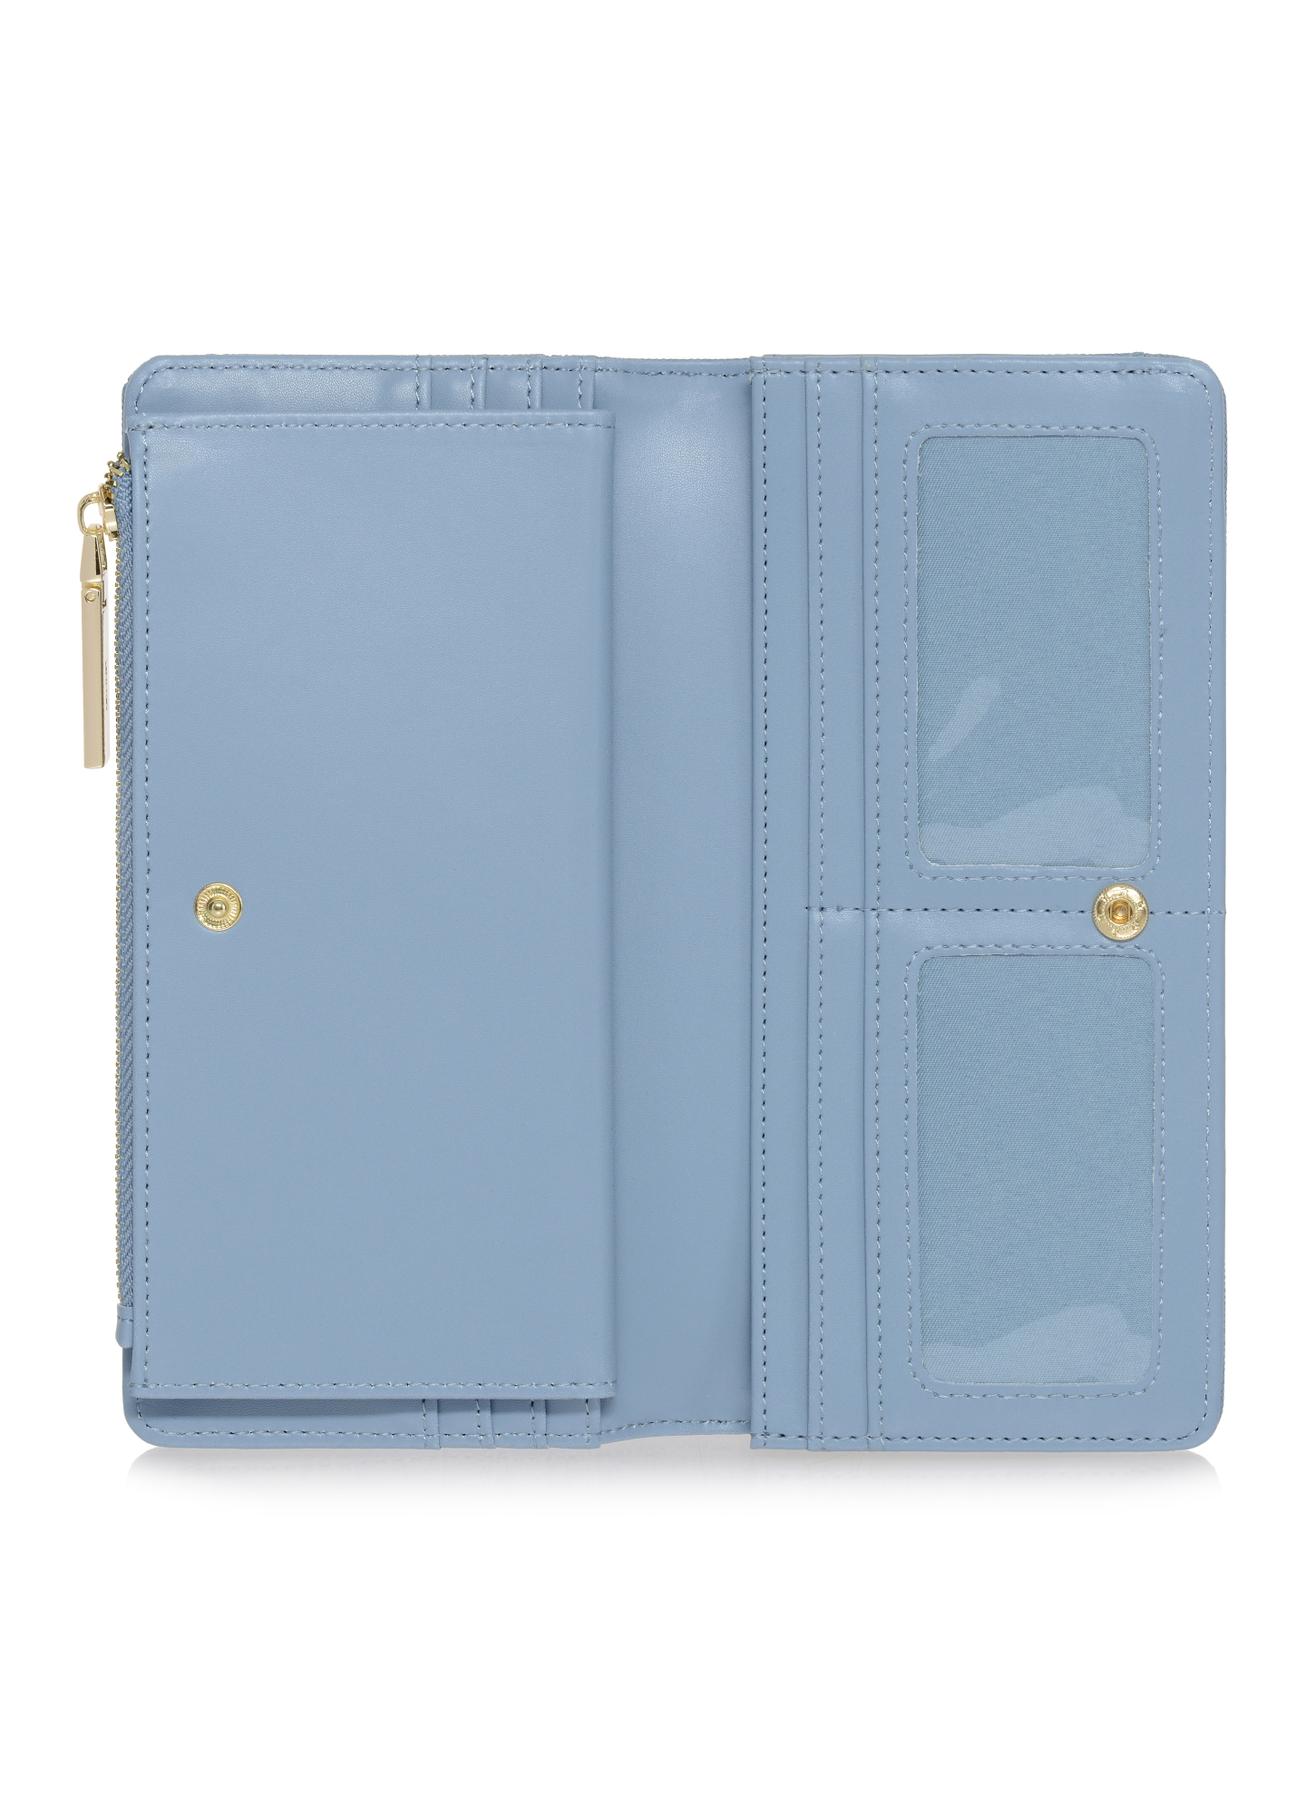 Duży błękitny portfel damski z tłoczeniem POREC-0320-61(W23)